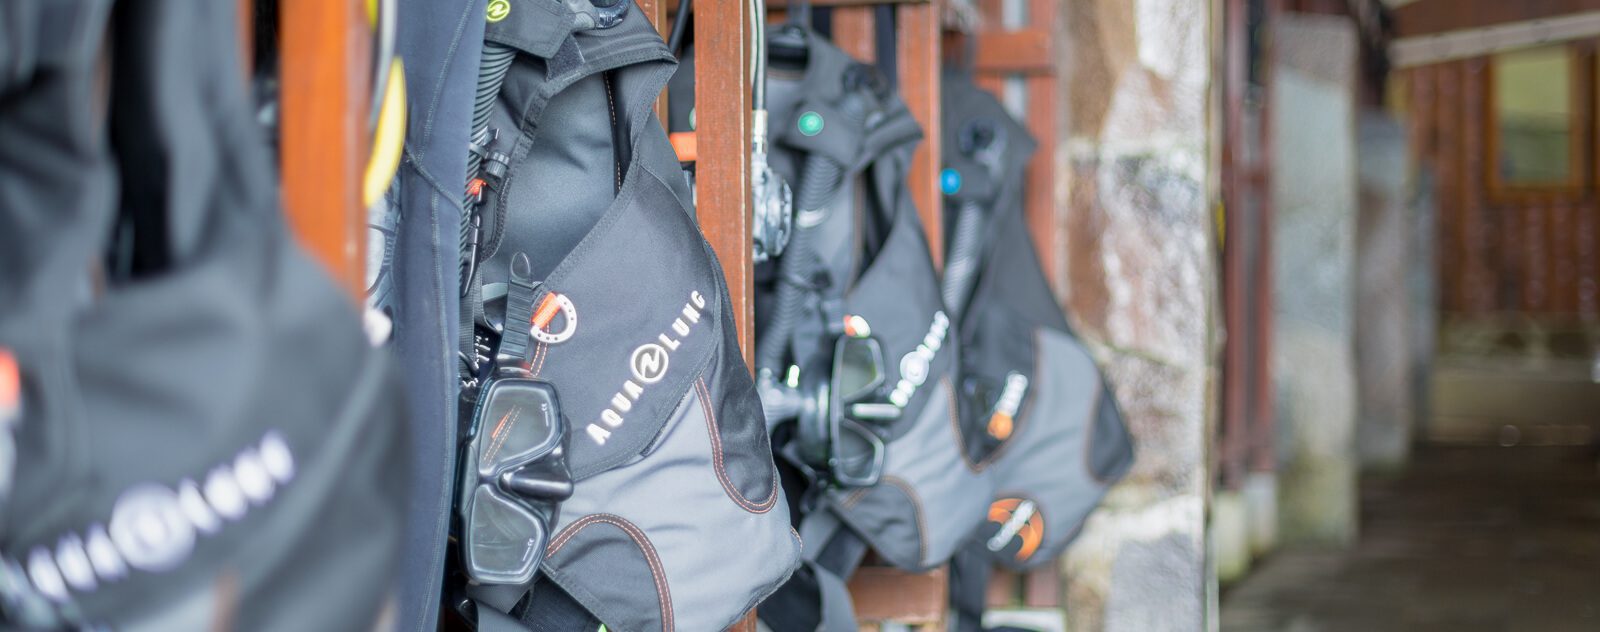 Lembeh Resort Diving equipment lockers